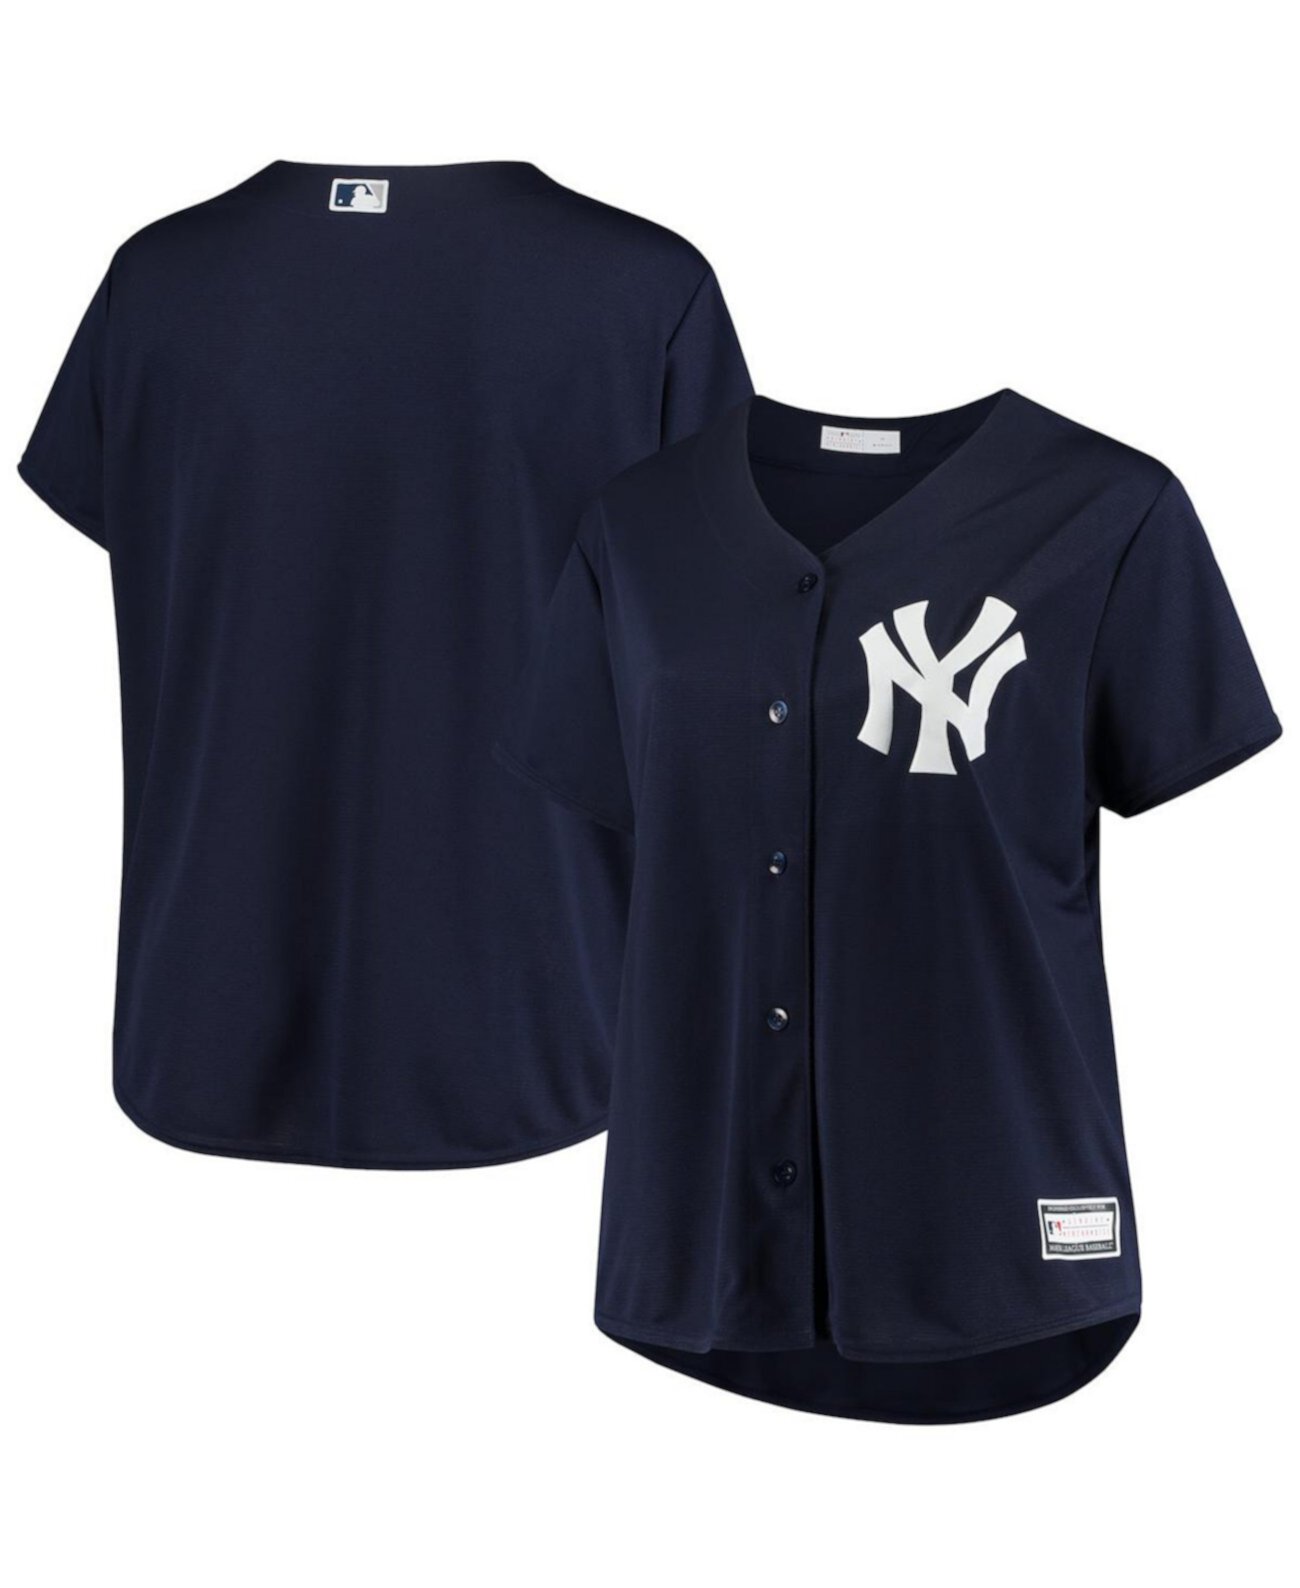 Женская темно-синяя футболка больших размеров New York Yankees, альтернативная реплика команды Profile